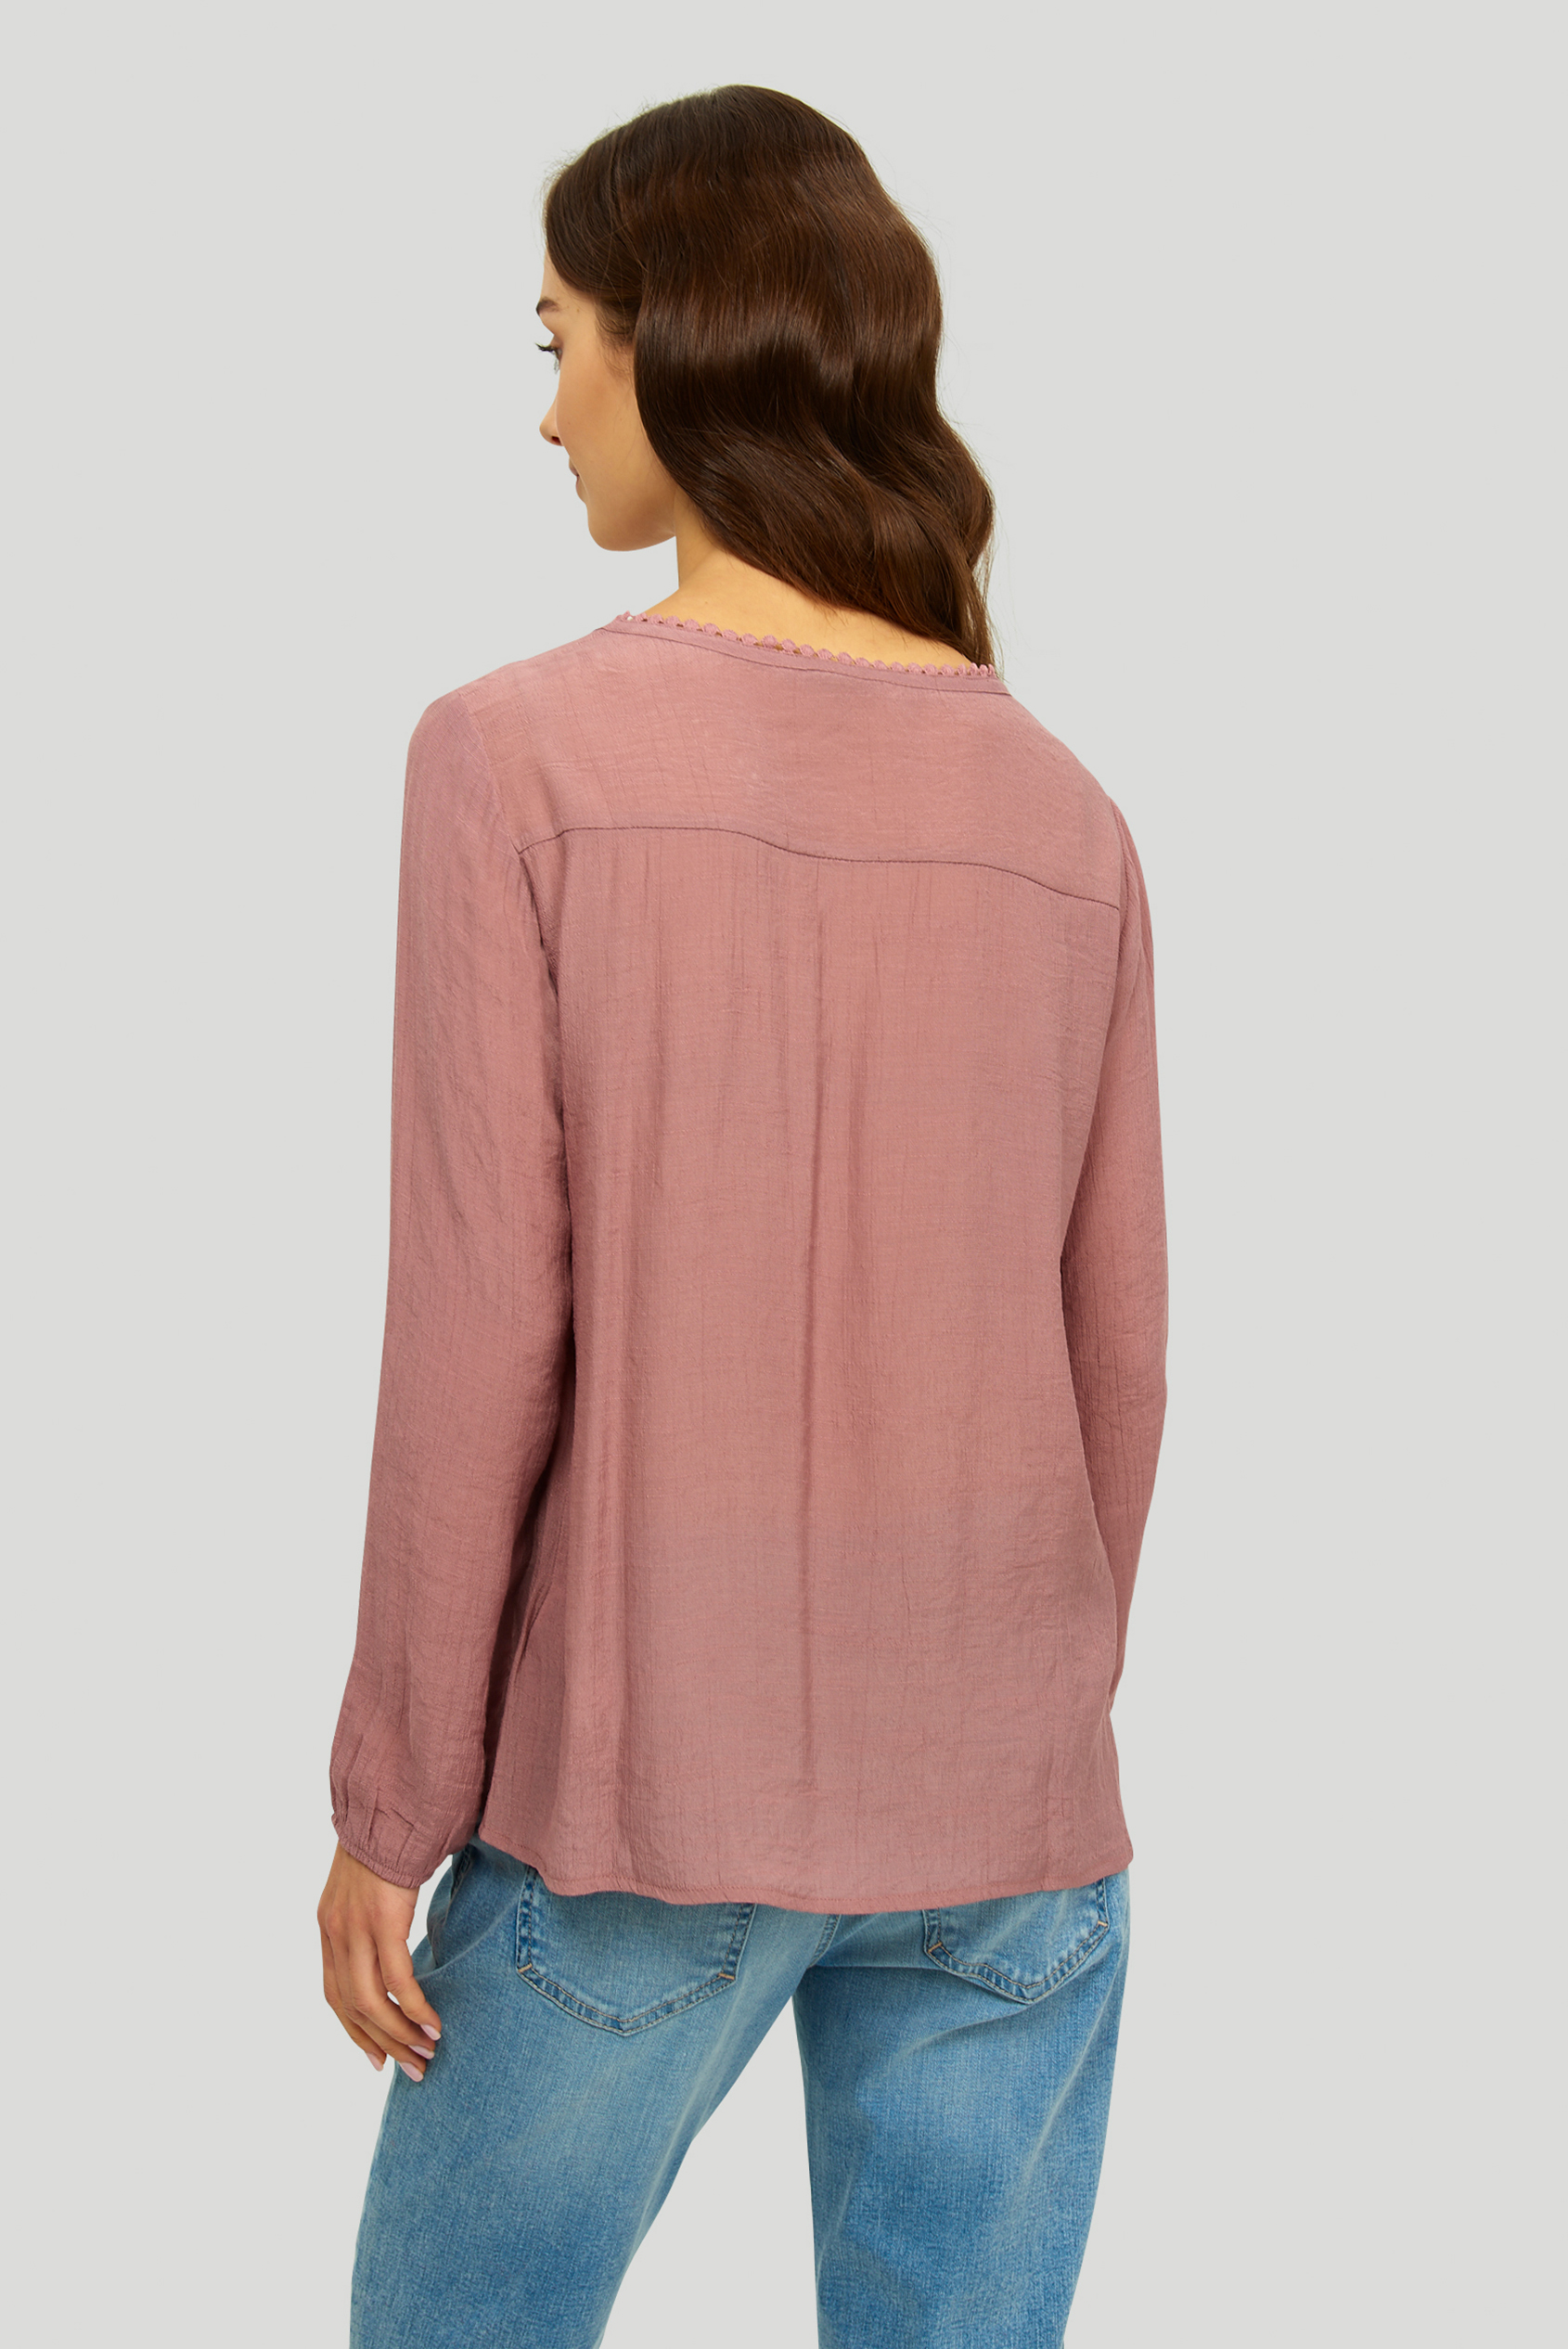 Elegancka, różowa bluzka z dekoracyjnymi mereżkami